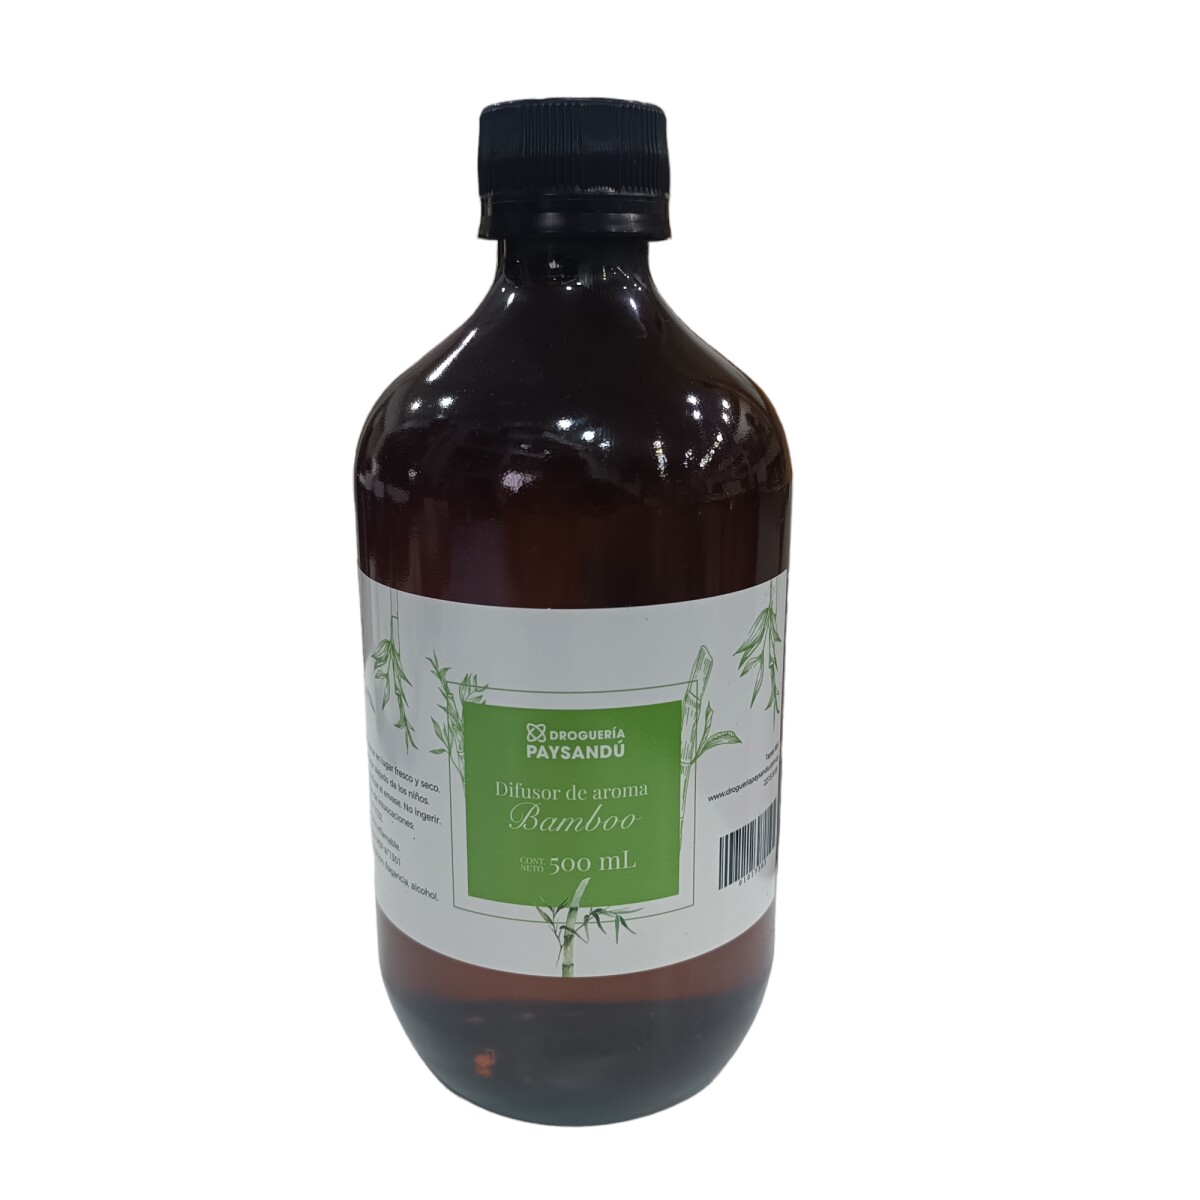 Difusor de Aroma Bamboo - 500 ml 